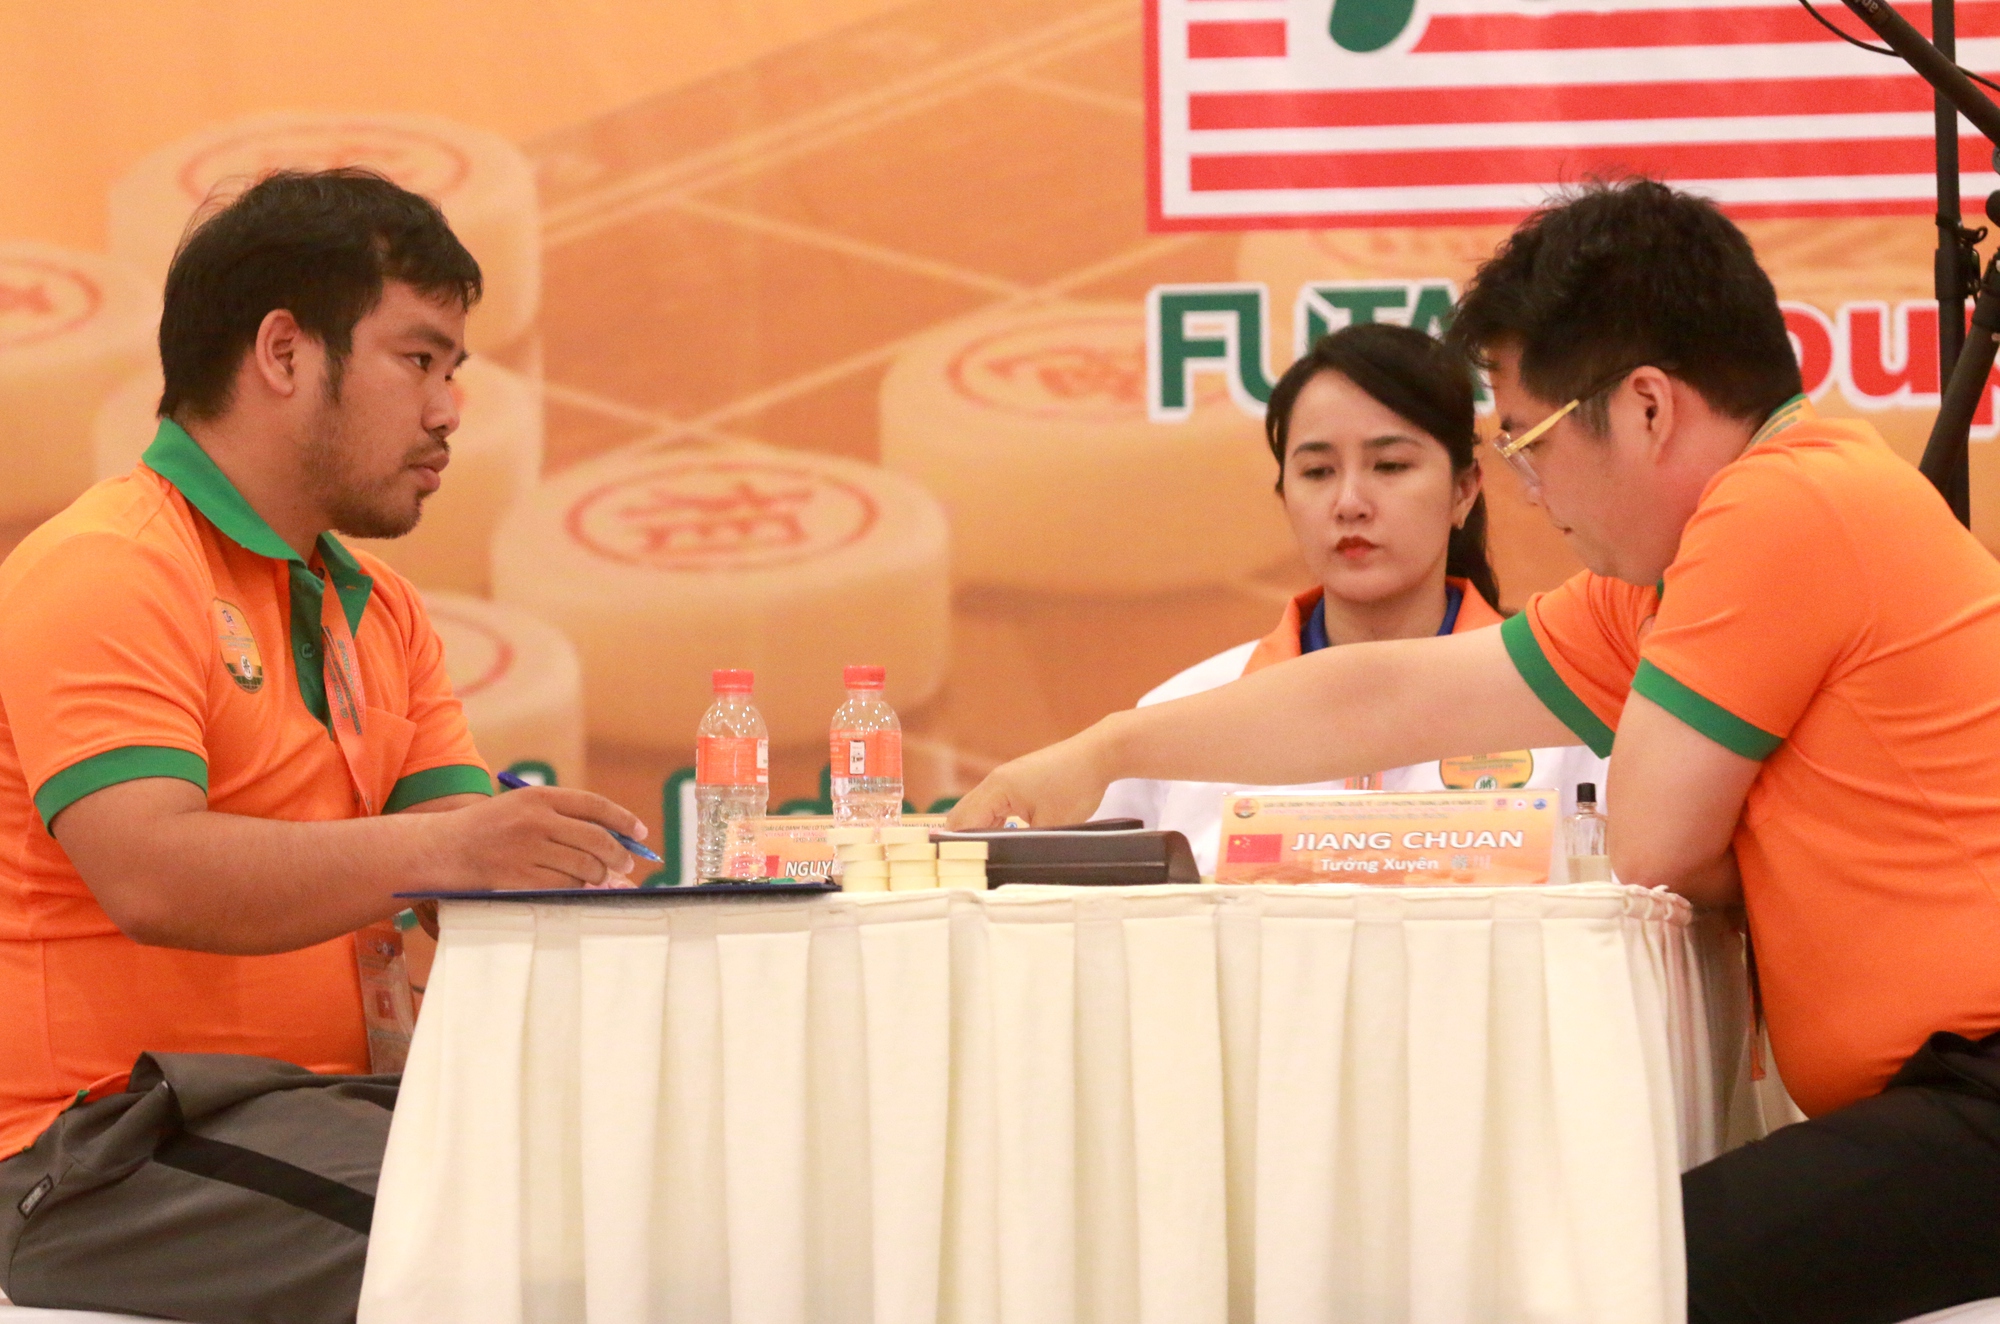 Kỳ vương Tưởng Xuyên lần thứ nhì đoạt cúp vô địch Phương Trang - Ảnh 1.